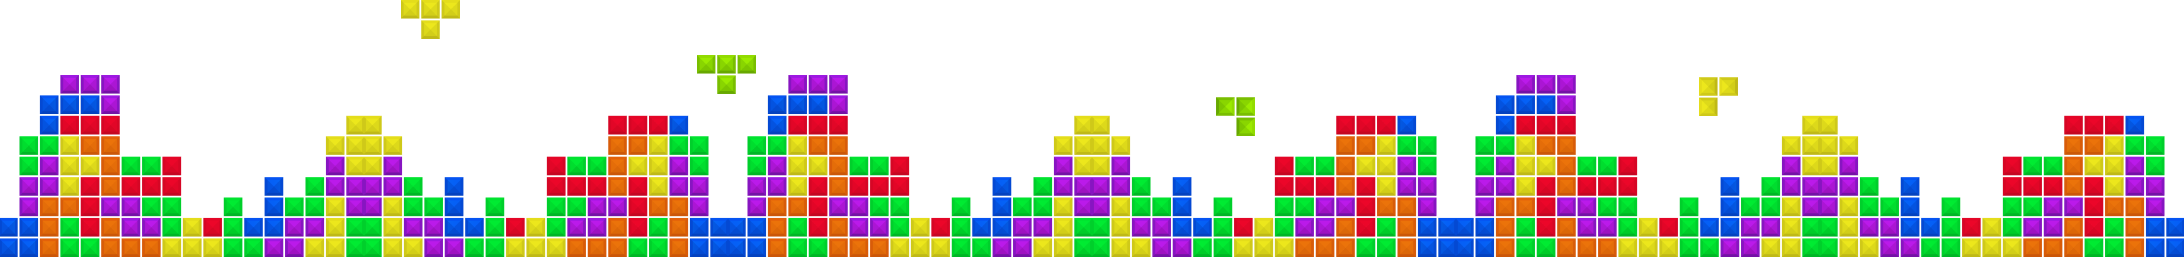 Tetris-game